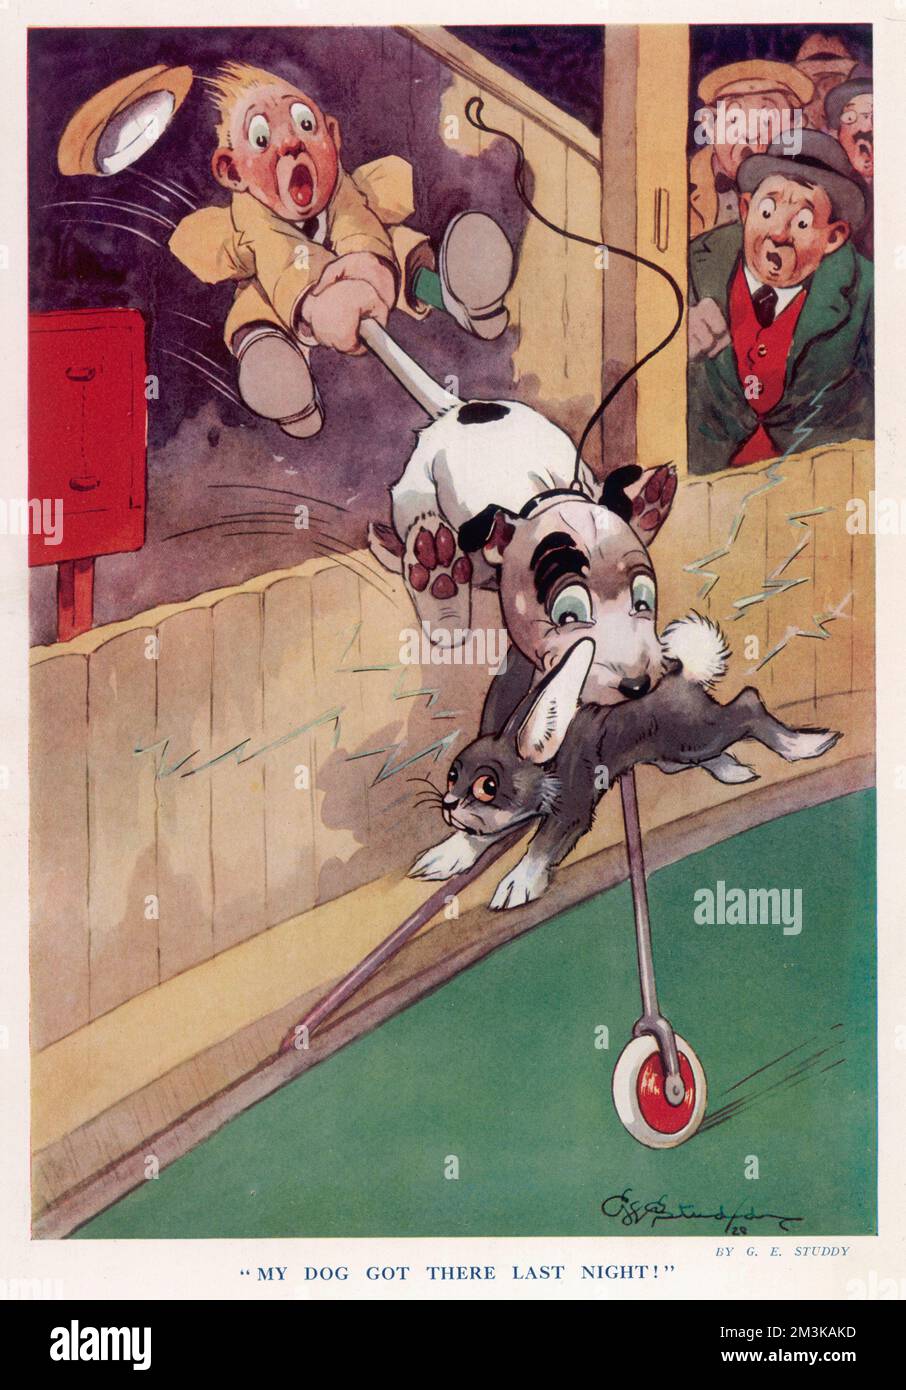 Humorvolle Illustration von George Studdy, dem Schöpfer von Bonzo, mit einem Bonzo-ähnlichen Hund, der die Abläufe auf der Windhundbahn vermasselt. Das Guthaben sollte lauten: Nachlass von George Studdy/Gresham Marketing Ltd./ILN/Mary Evans Datum: 1928 Stockfoto